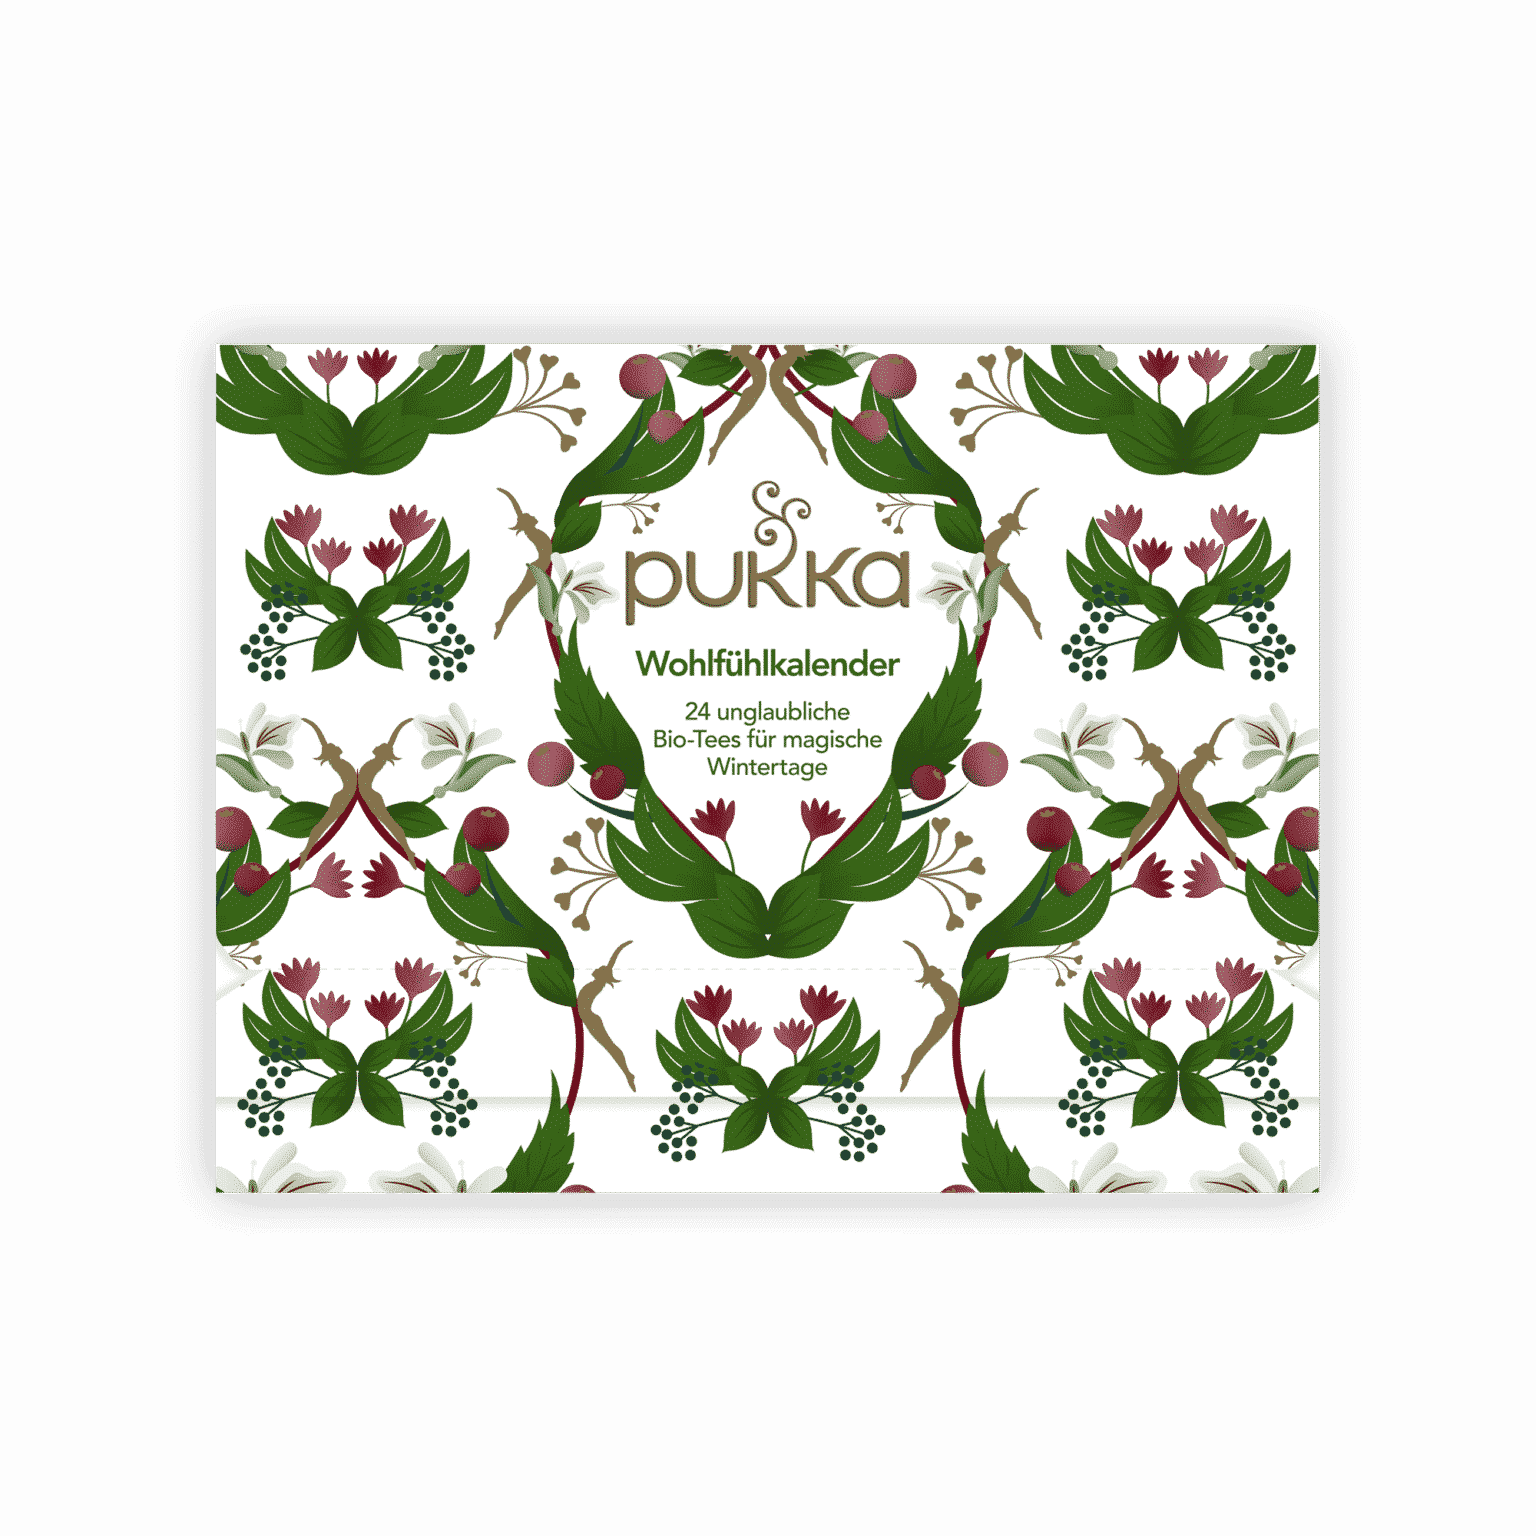 Bio-Tee-Adventkalender 2021 von Pukka